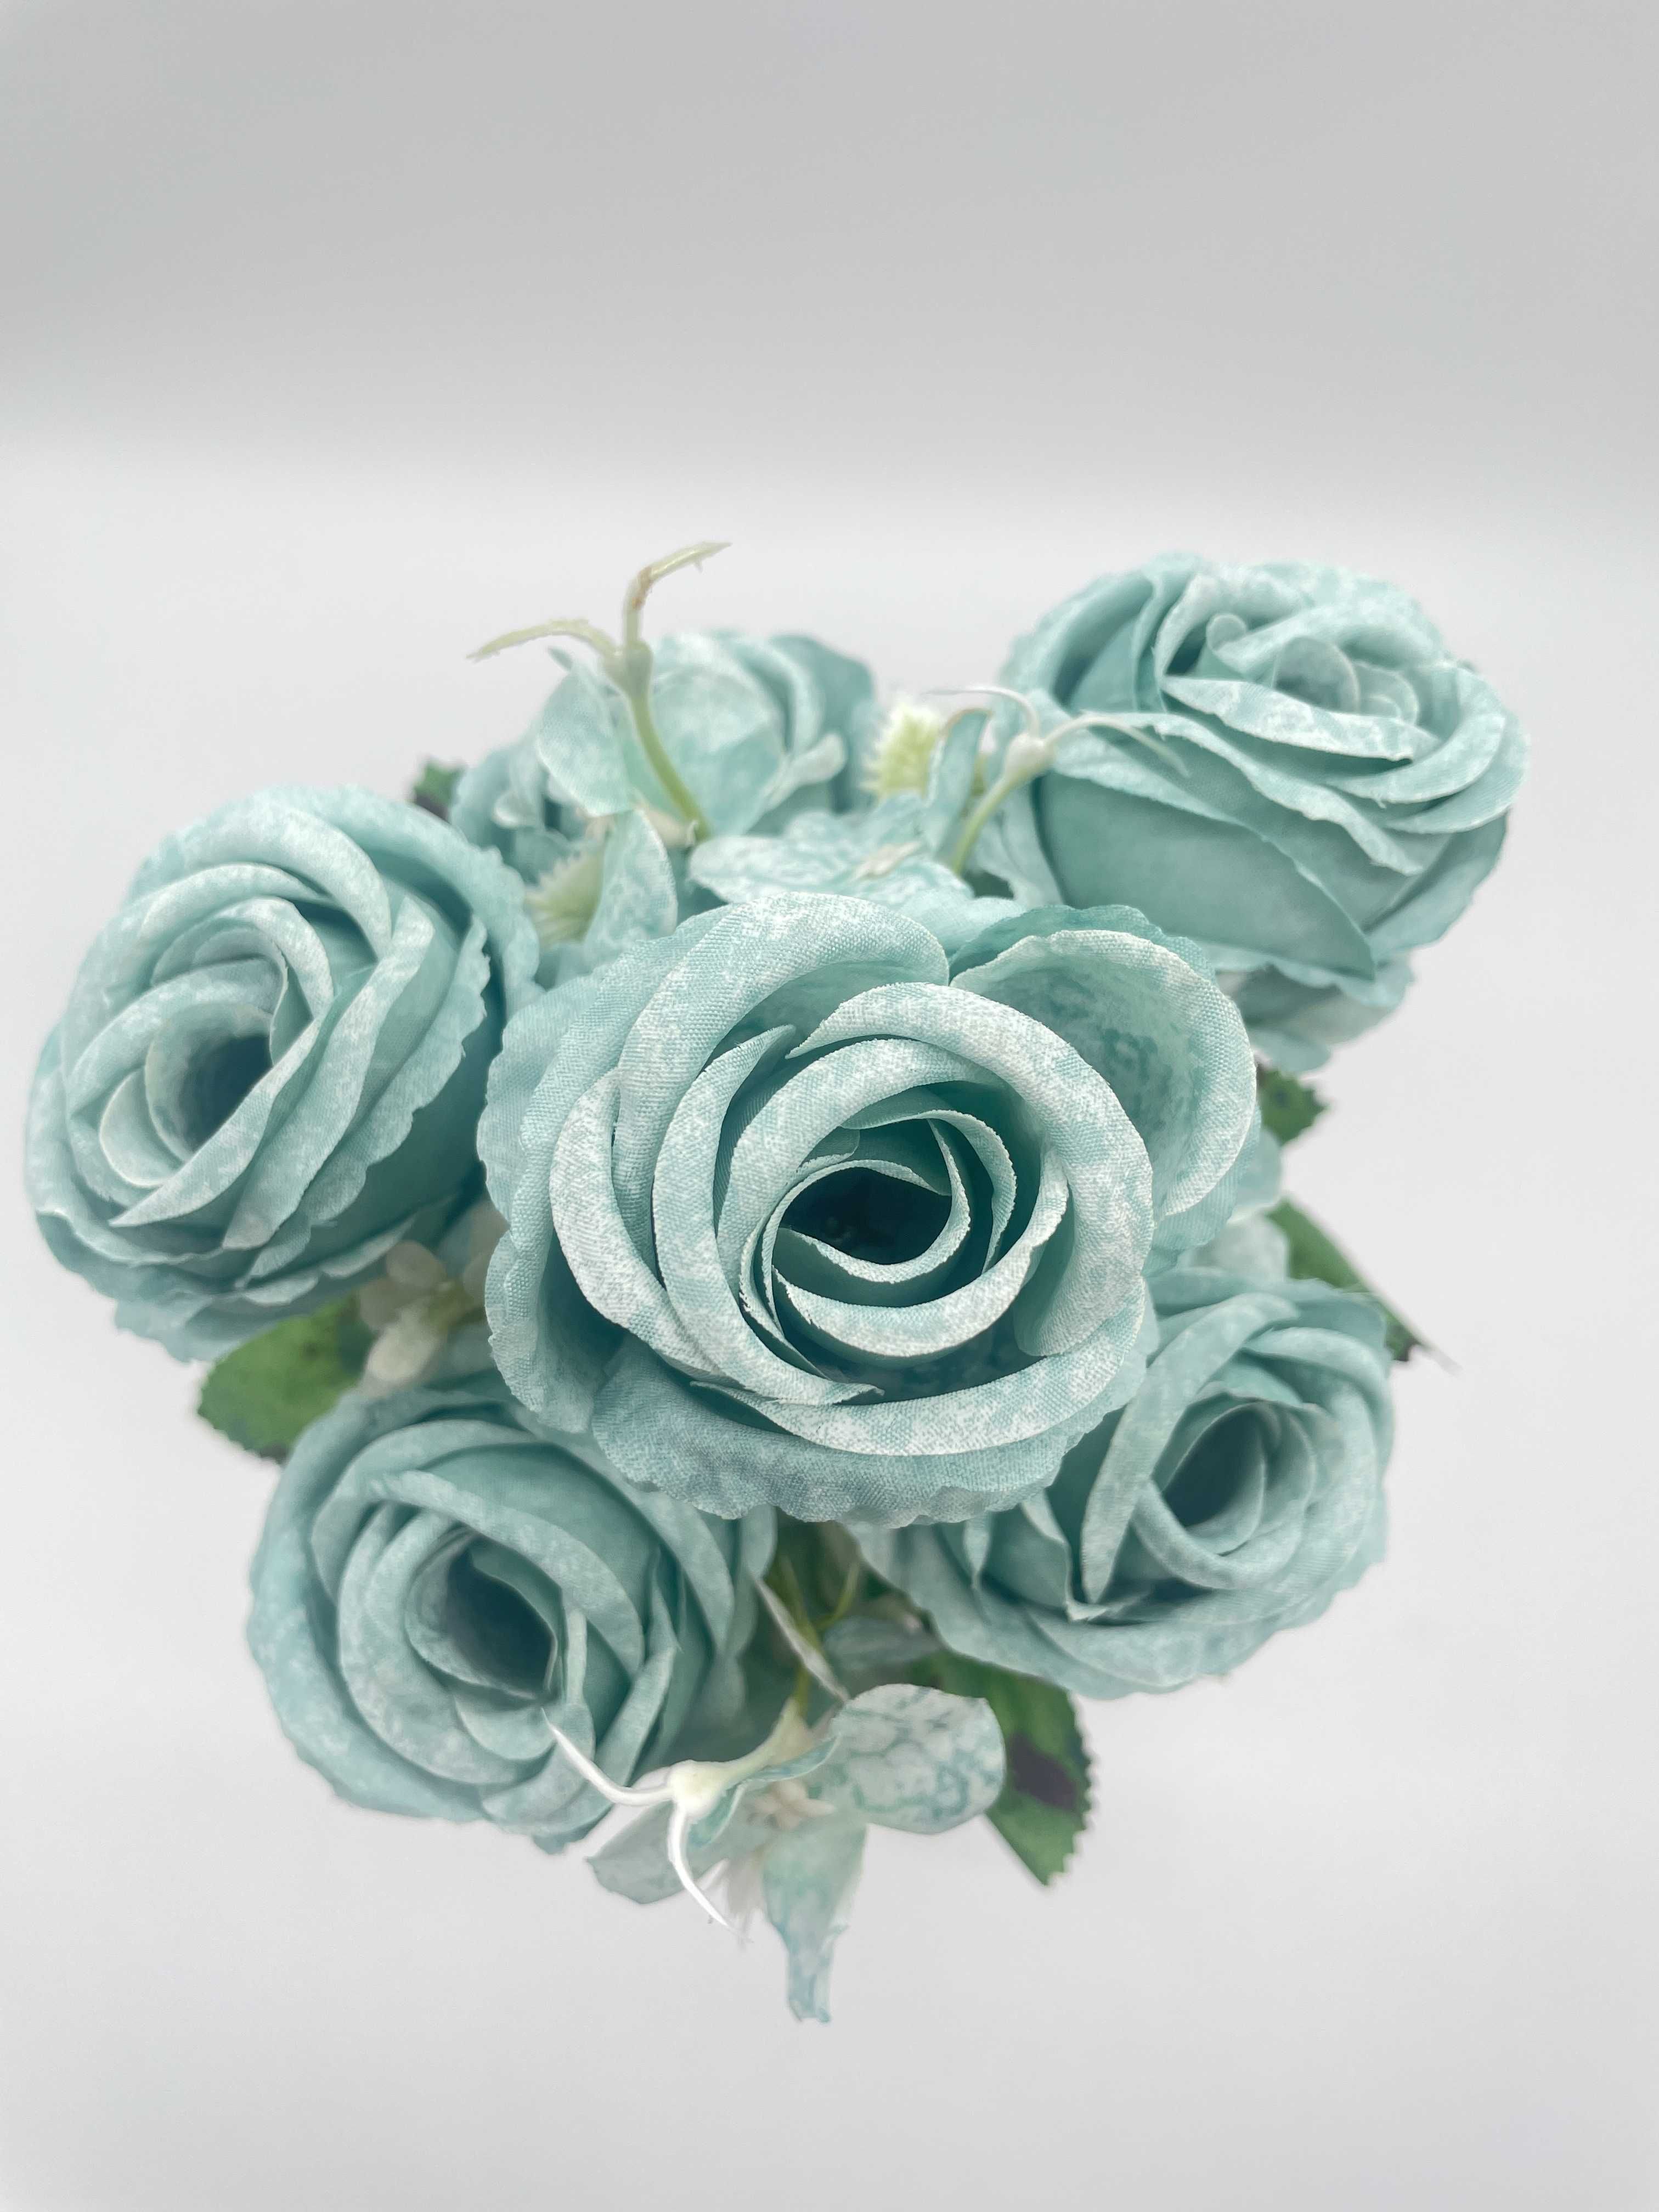 Bukiet Kwiatów Róży Niebieski Wazon 29 cm